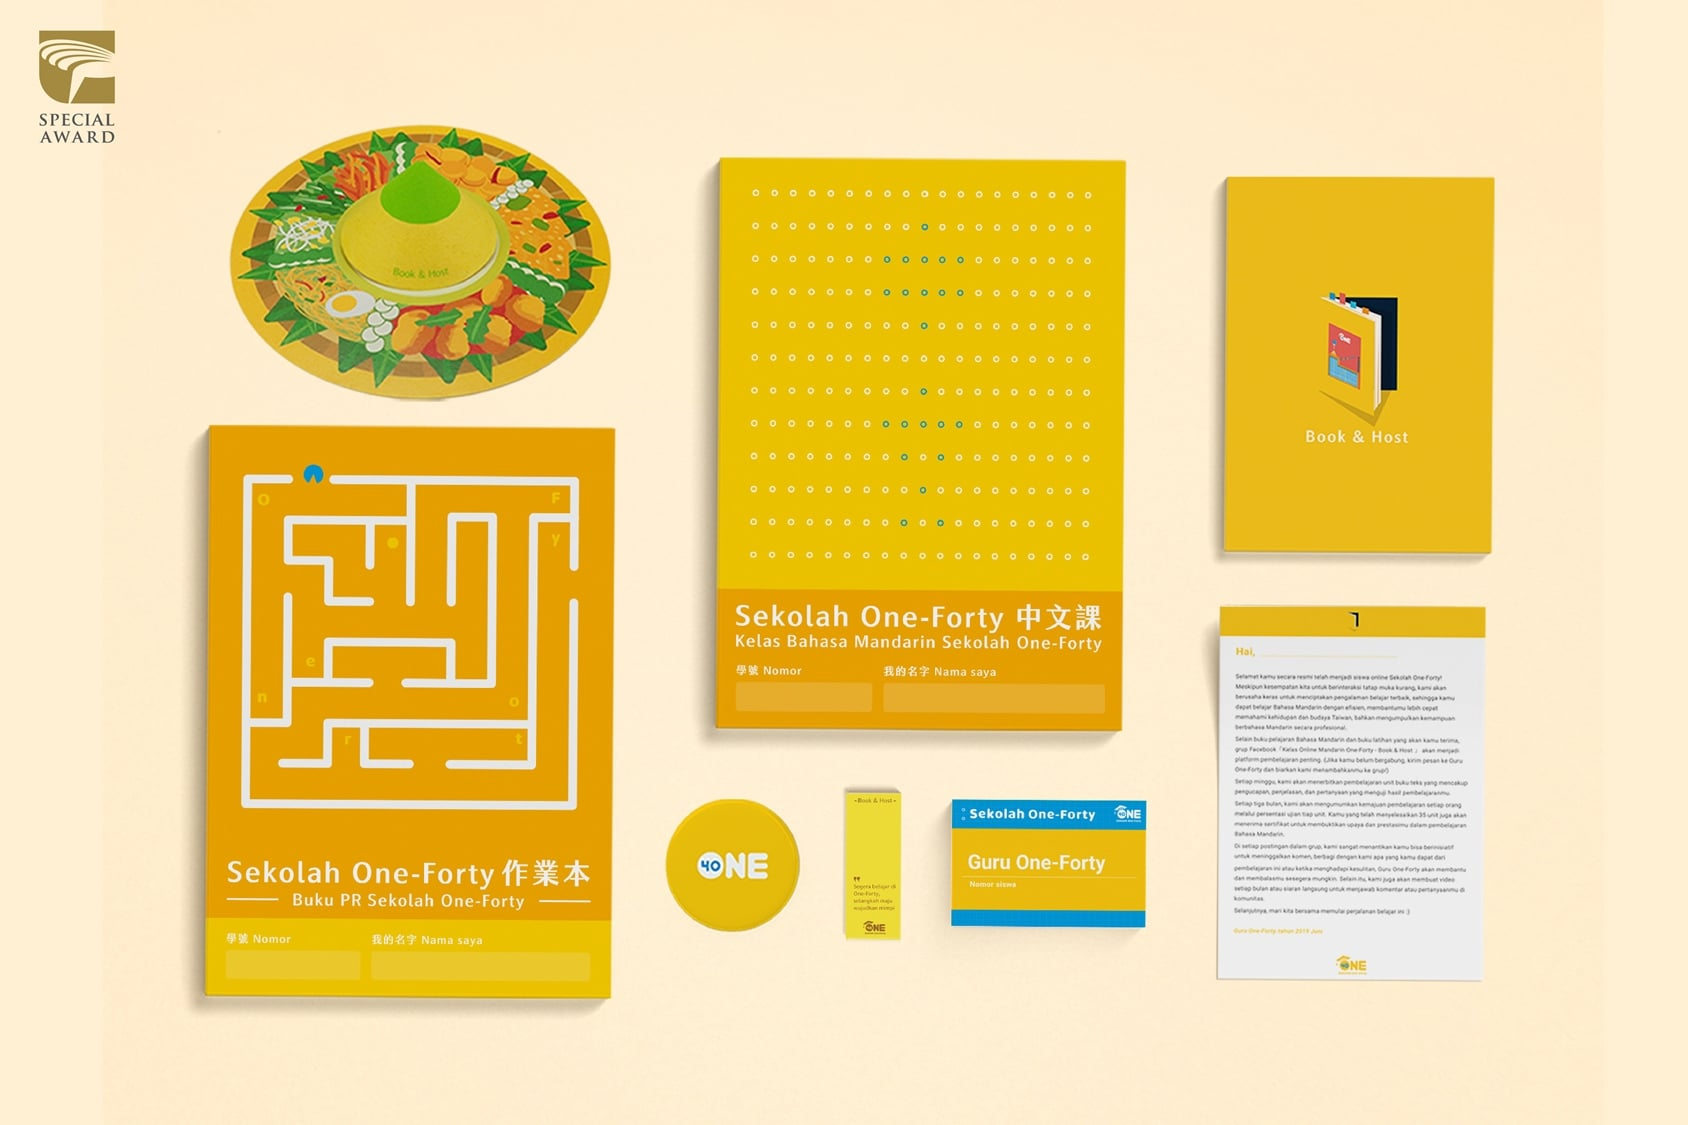 การออกแบบเพื่อเพรียกหาช่องทางออก ให้กับกลุ่มแรงงานภูมิภาคเอเชียตะวันออกเฉียงใต้—— จากโครงการ “Book & Host” ไต้หวัน